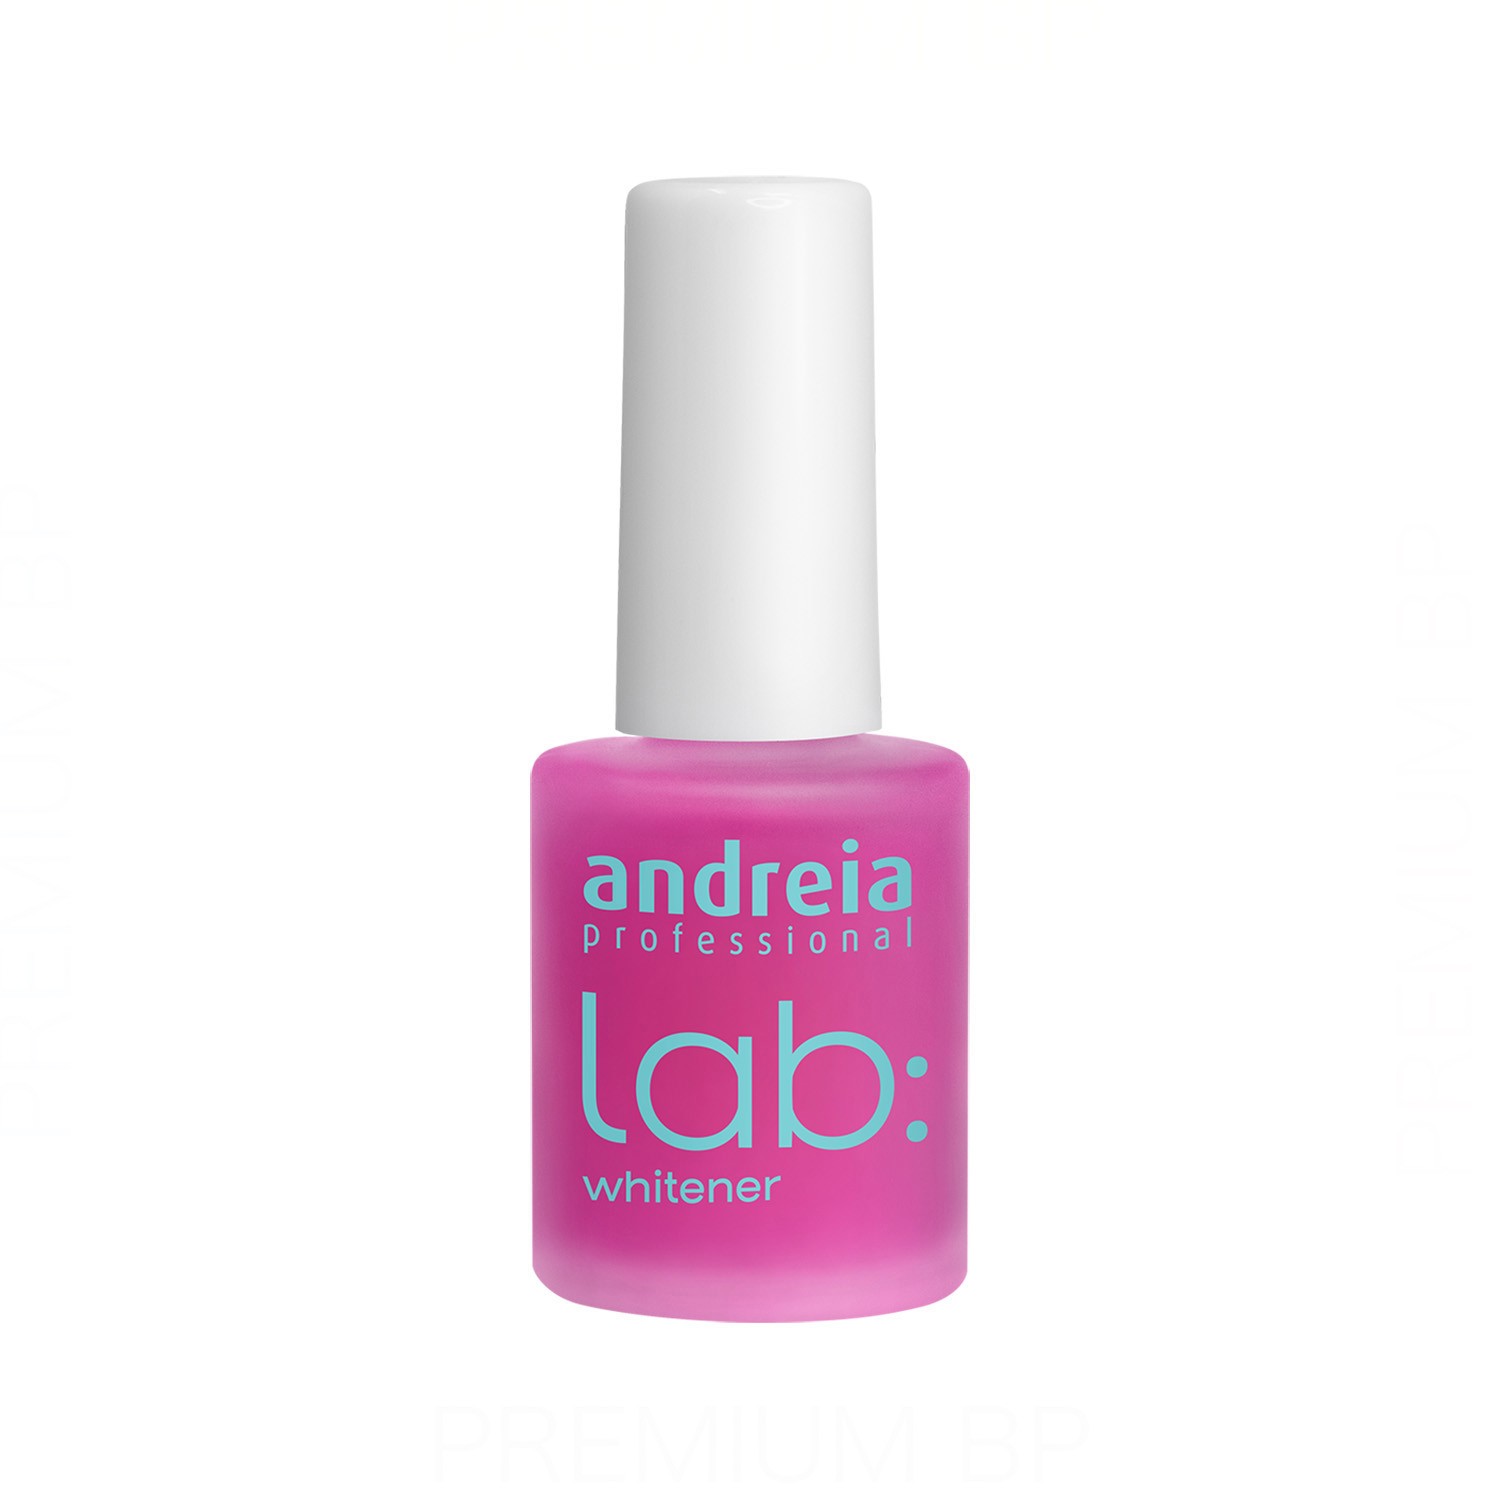 Andreia - Andreia professional lab: blanqueador 10,5 ml,  Belleza y cuidado de tu cabello y tu piel con Andreia.